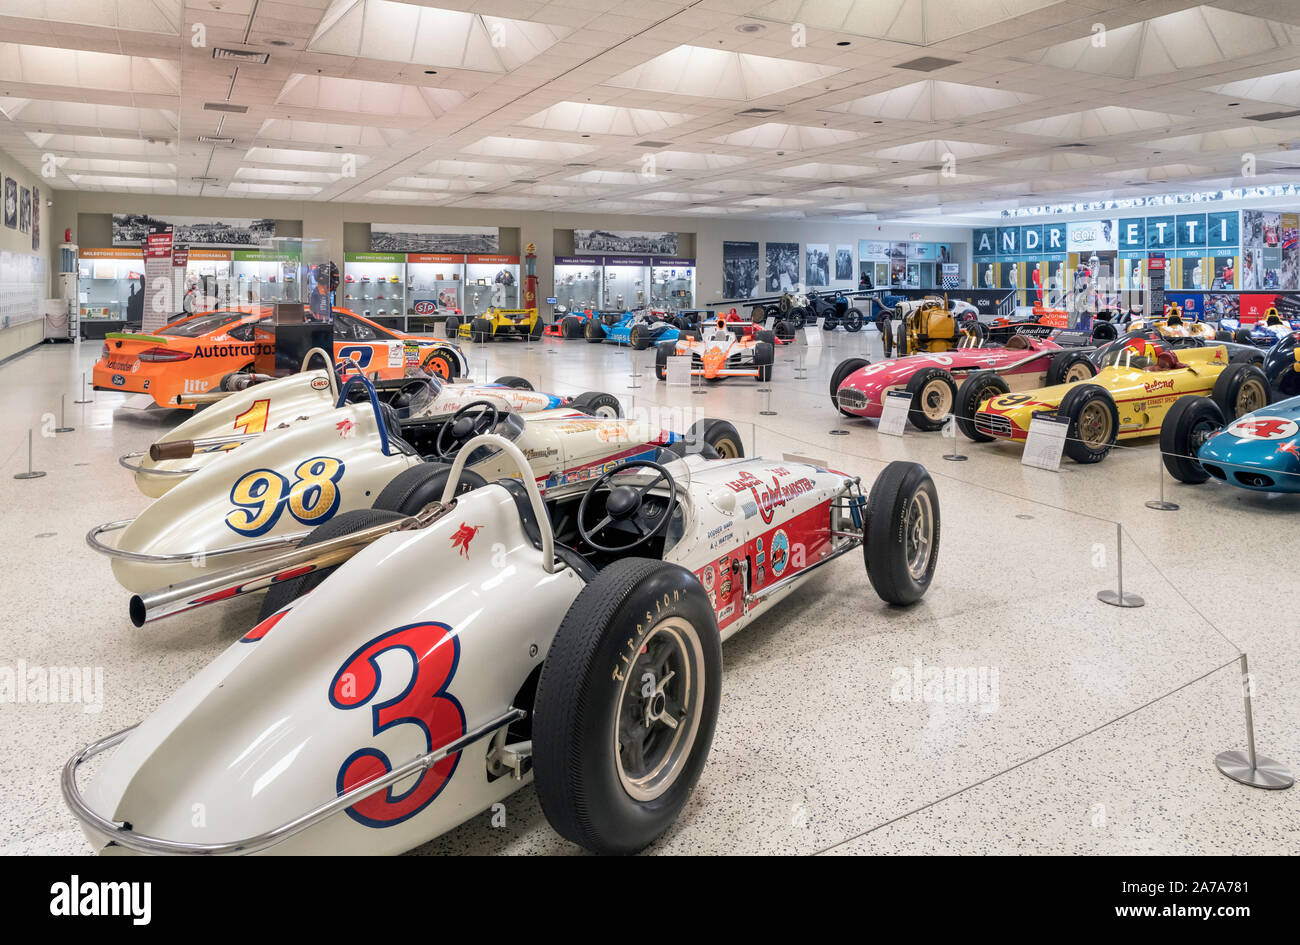 Intérieur de l'Indianapolis Motor Speedway Museum, Indianapolis, Indiana, USA. Le Speedway est l'accueil de la course Indianapolis 500. Banque D'Images